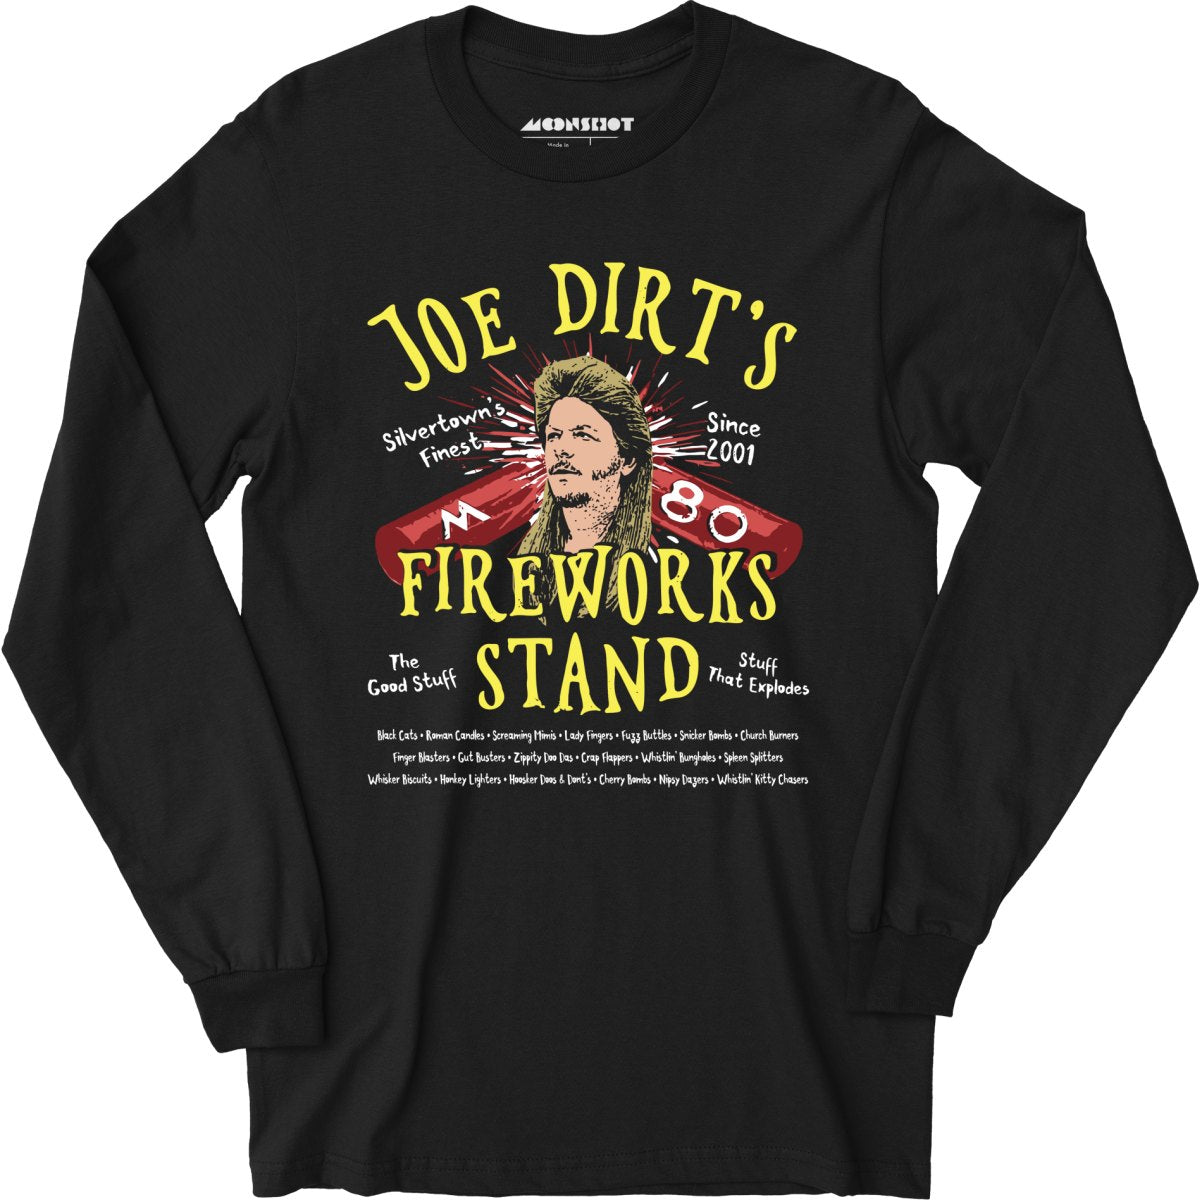 Joe Dirt's Fireworks Stand - Long Sleeve T-Shirt